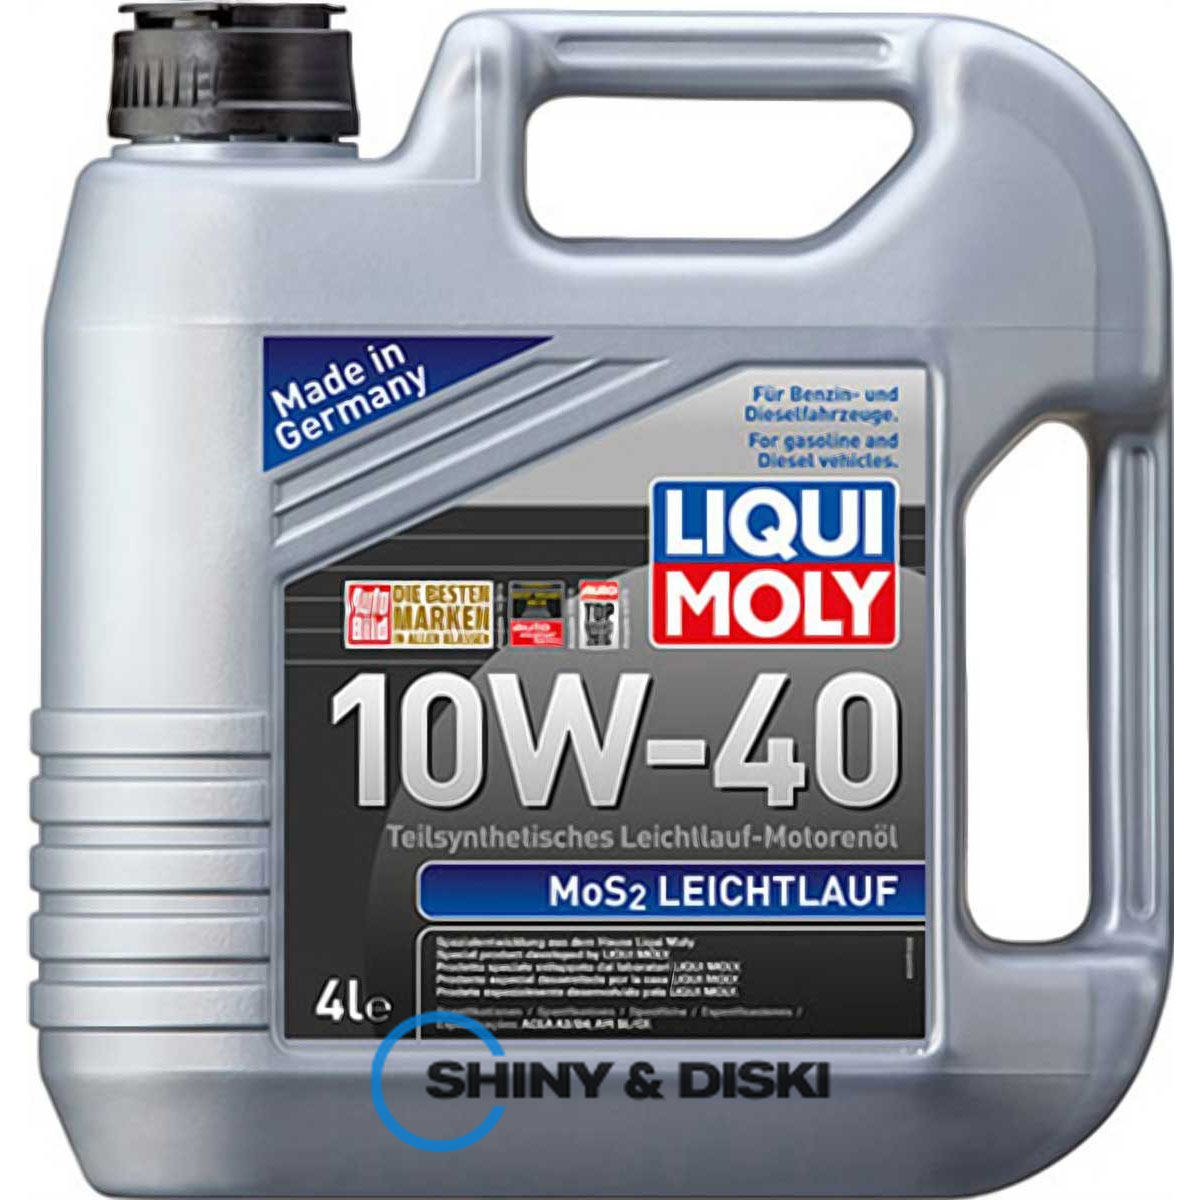 liqui moly mos2 leichtlauf 10w-40 (4л)